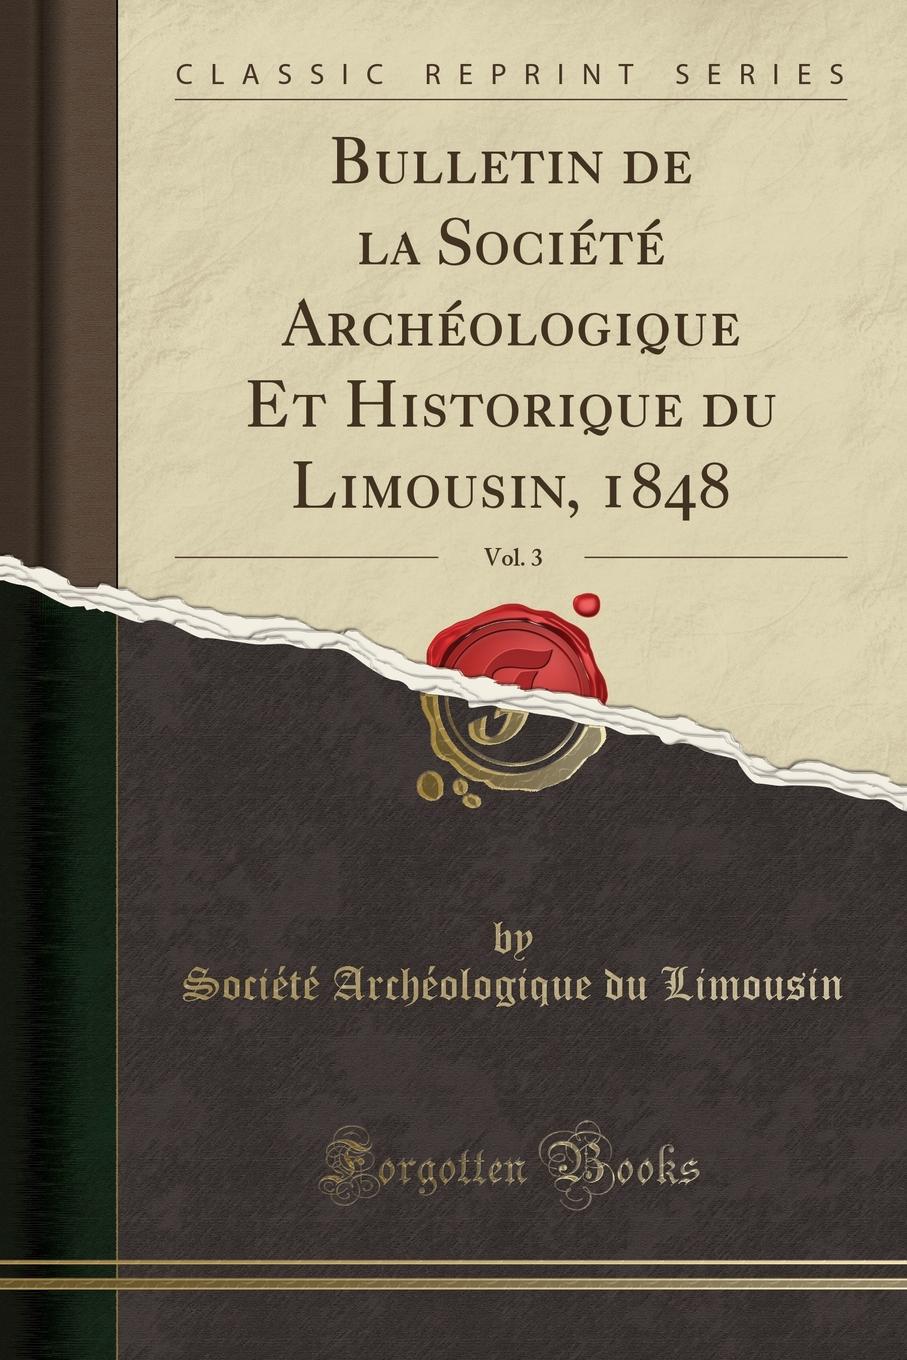 Société Archéologique du Limousin Bulletin de la Societe Archeologique Et Historique du Limousin, 1848, Vol. 3 (Classic Reprint)